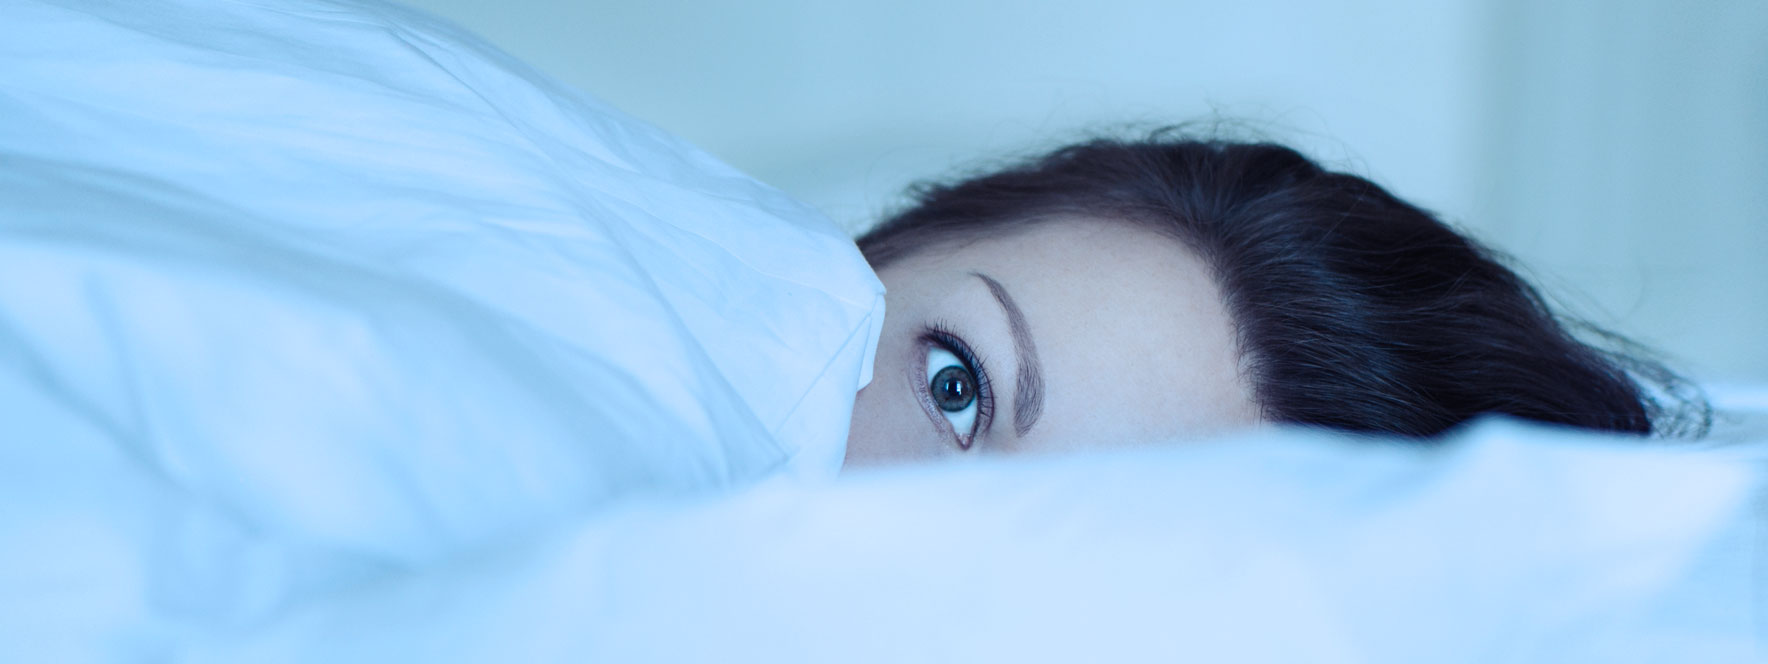 Les causes d’insomnie | Réseau des massothérapeutes